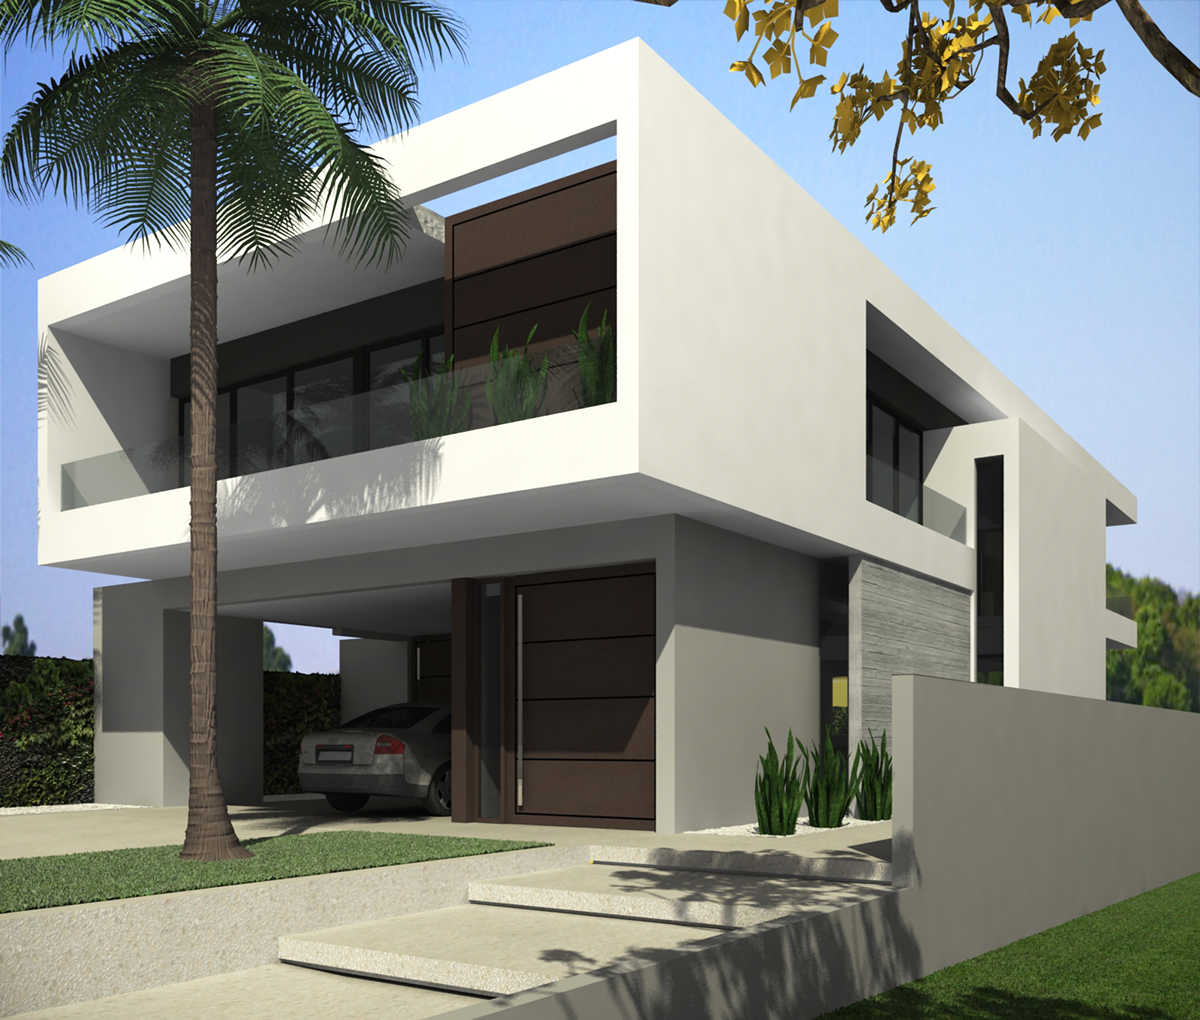 Casa PJ & E no Cond. Reserva dos Lagos - Ano 2014 - Pindamonhangaba-SP